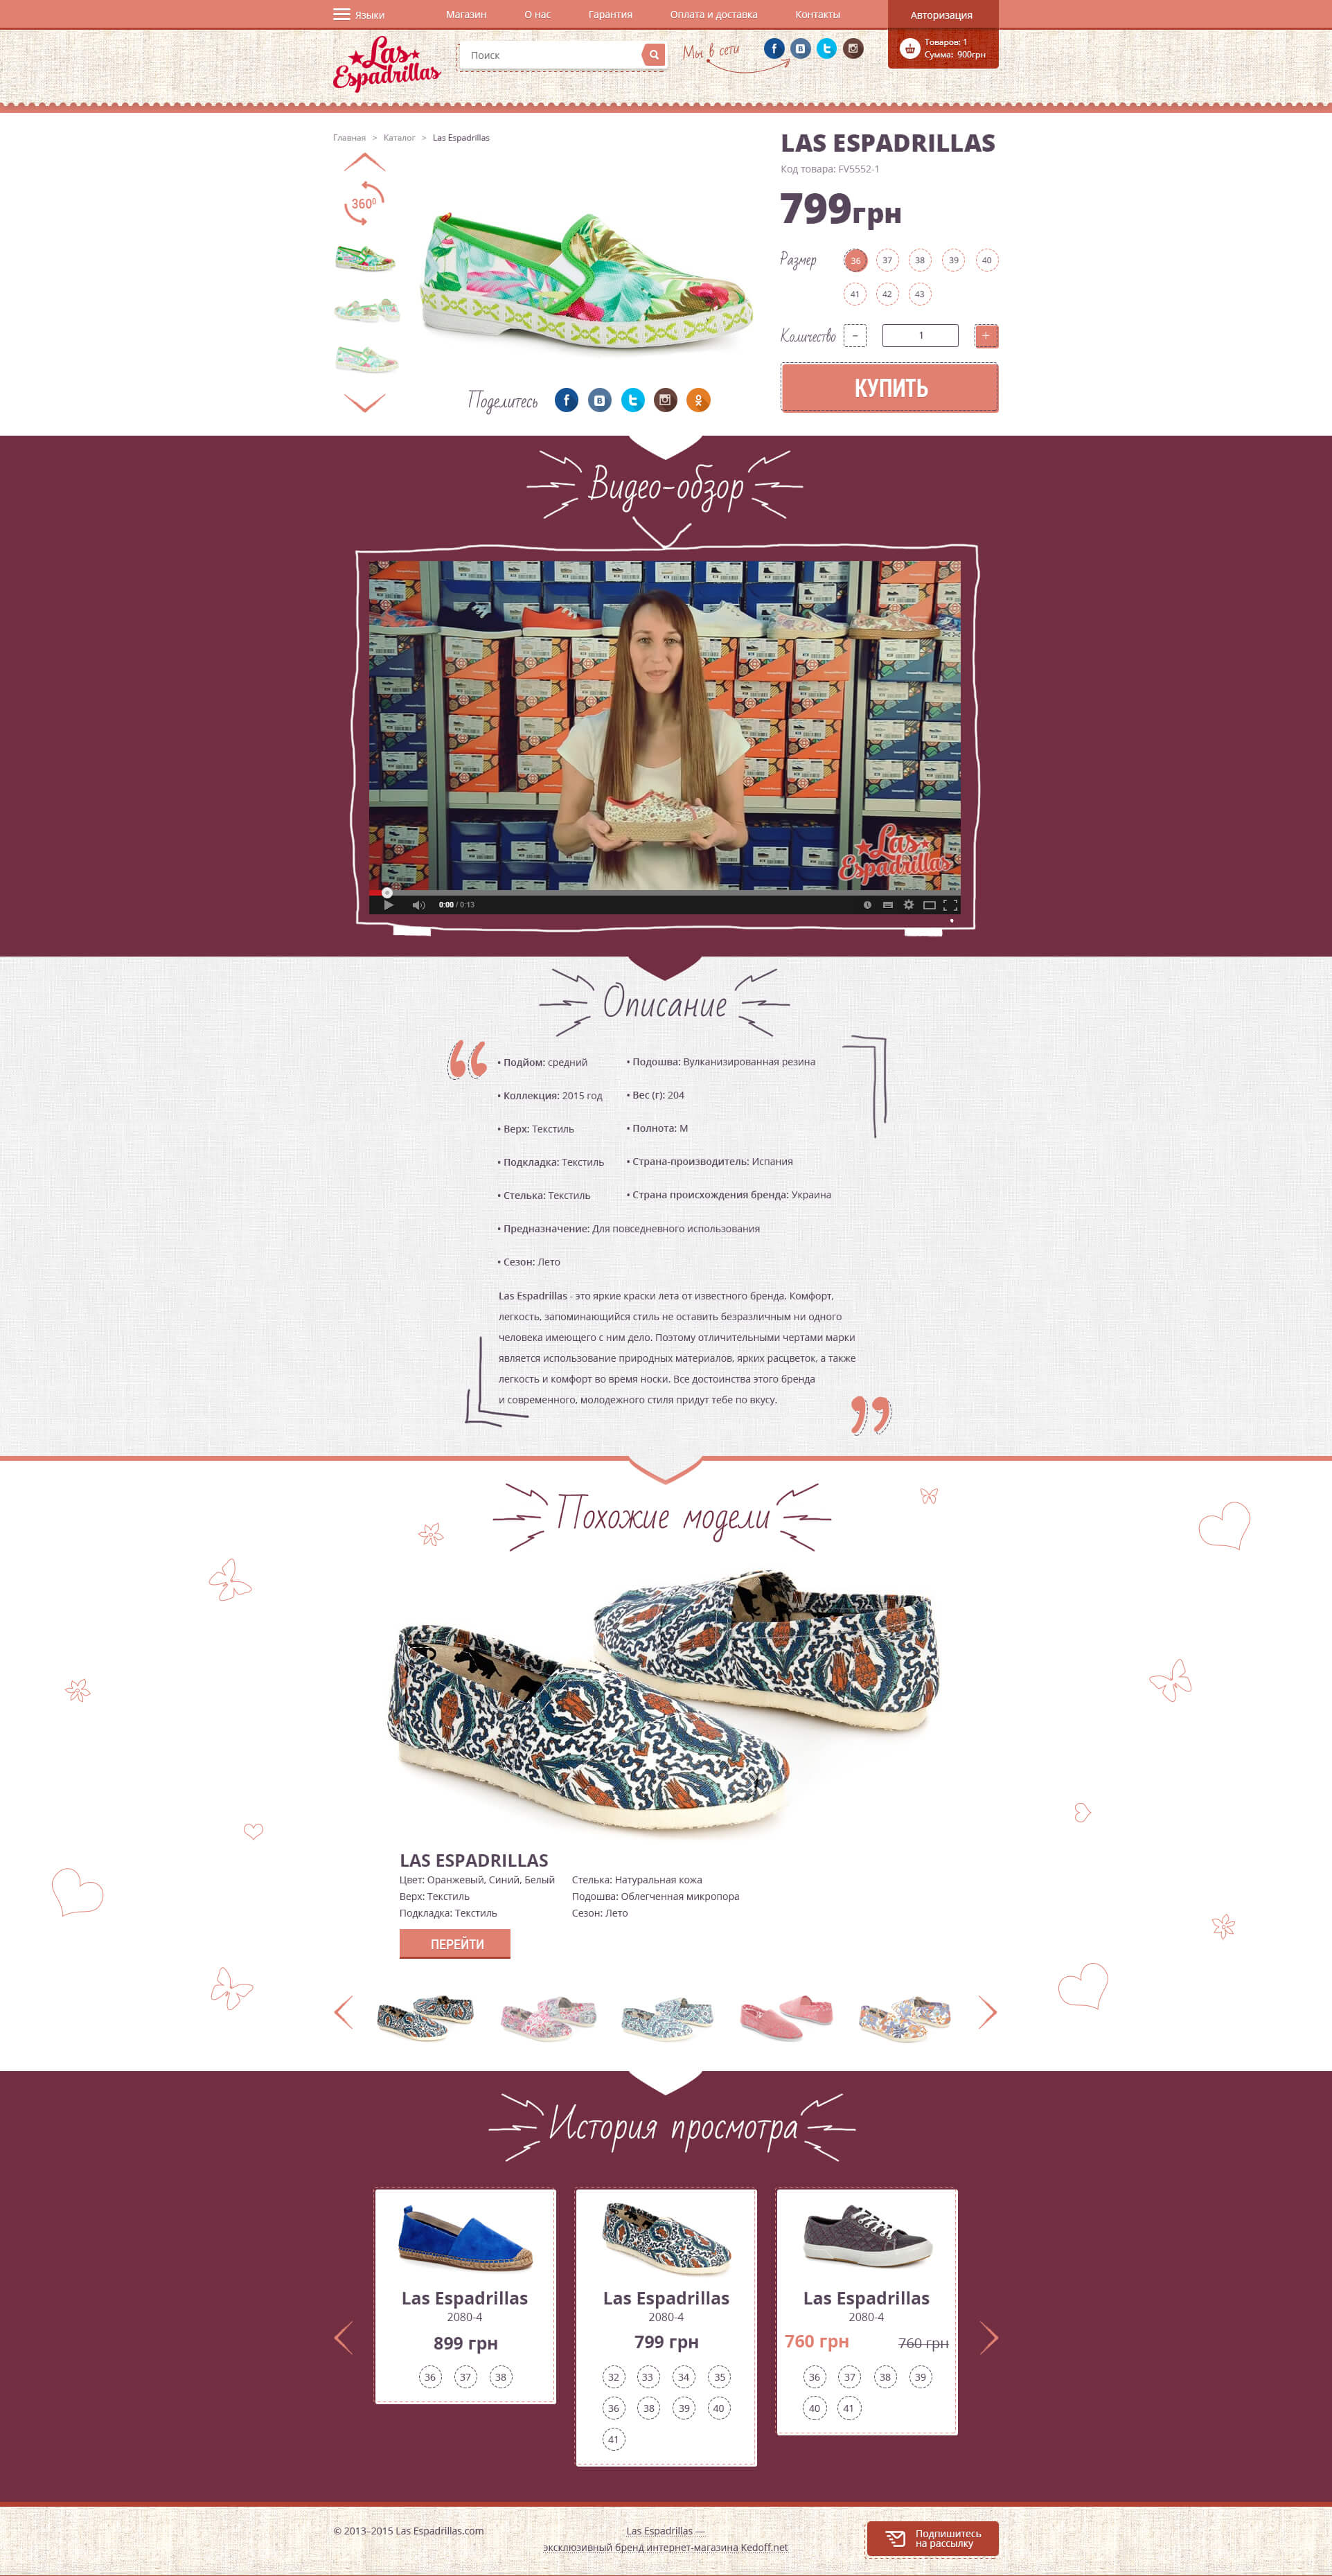 Online store of shoes-Las Espadrillas